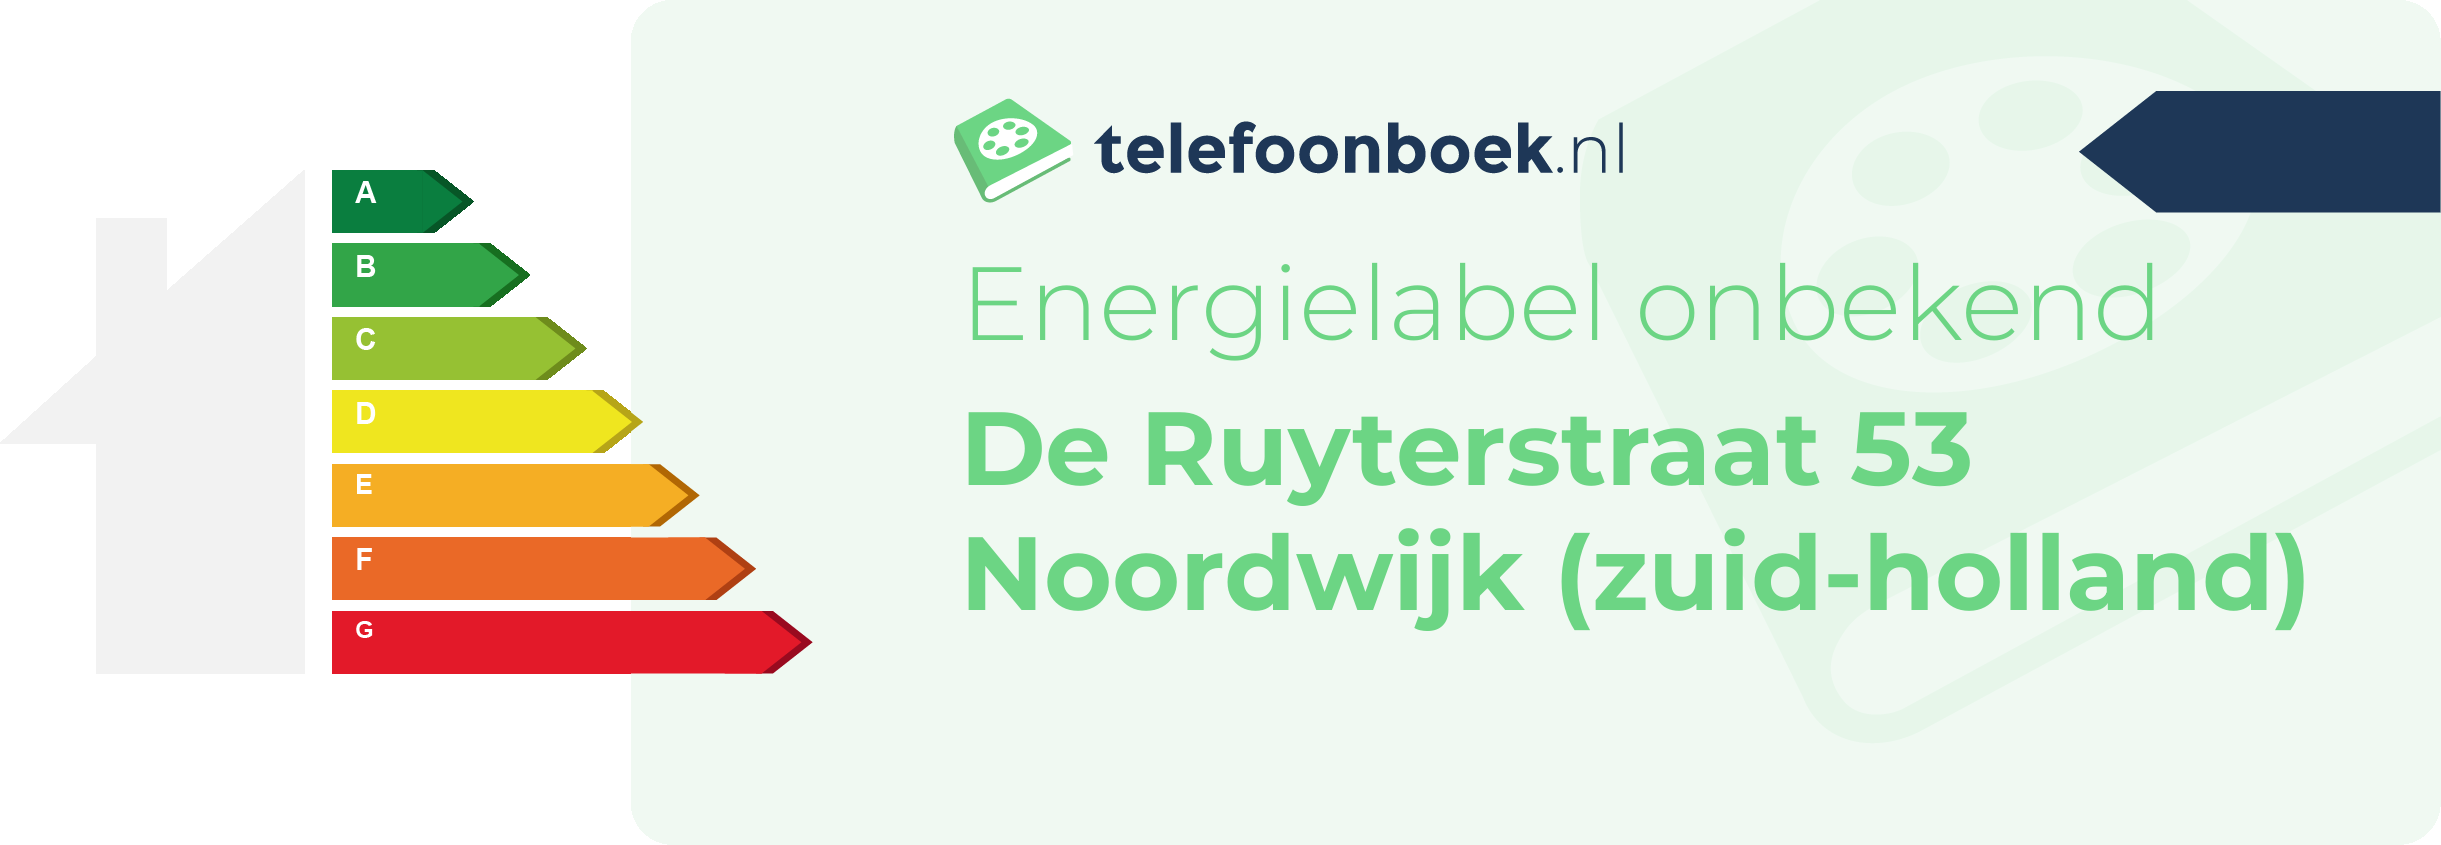 Energielabel De Ruyterstraat 53 Noordwijk (Zuid-Holland)